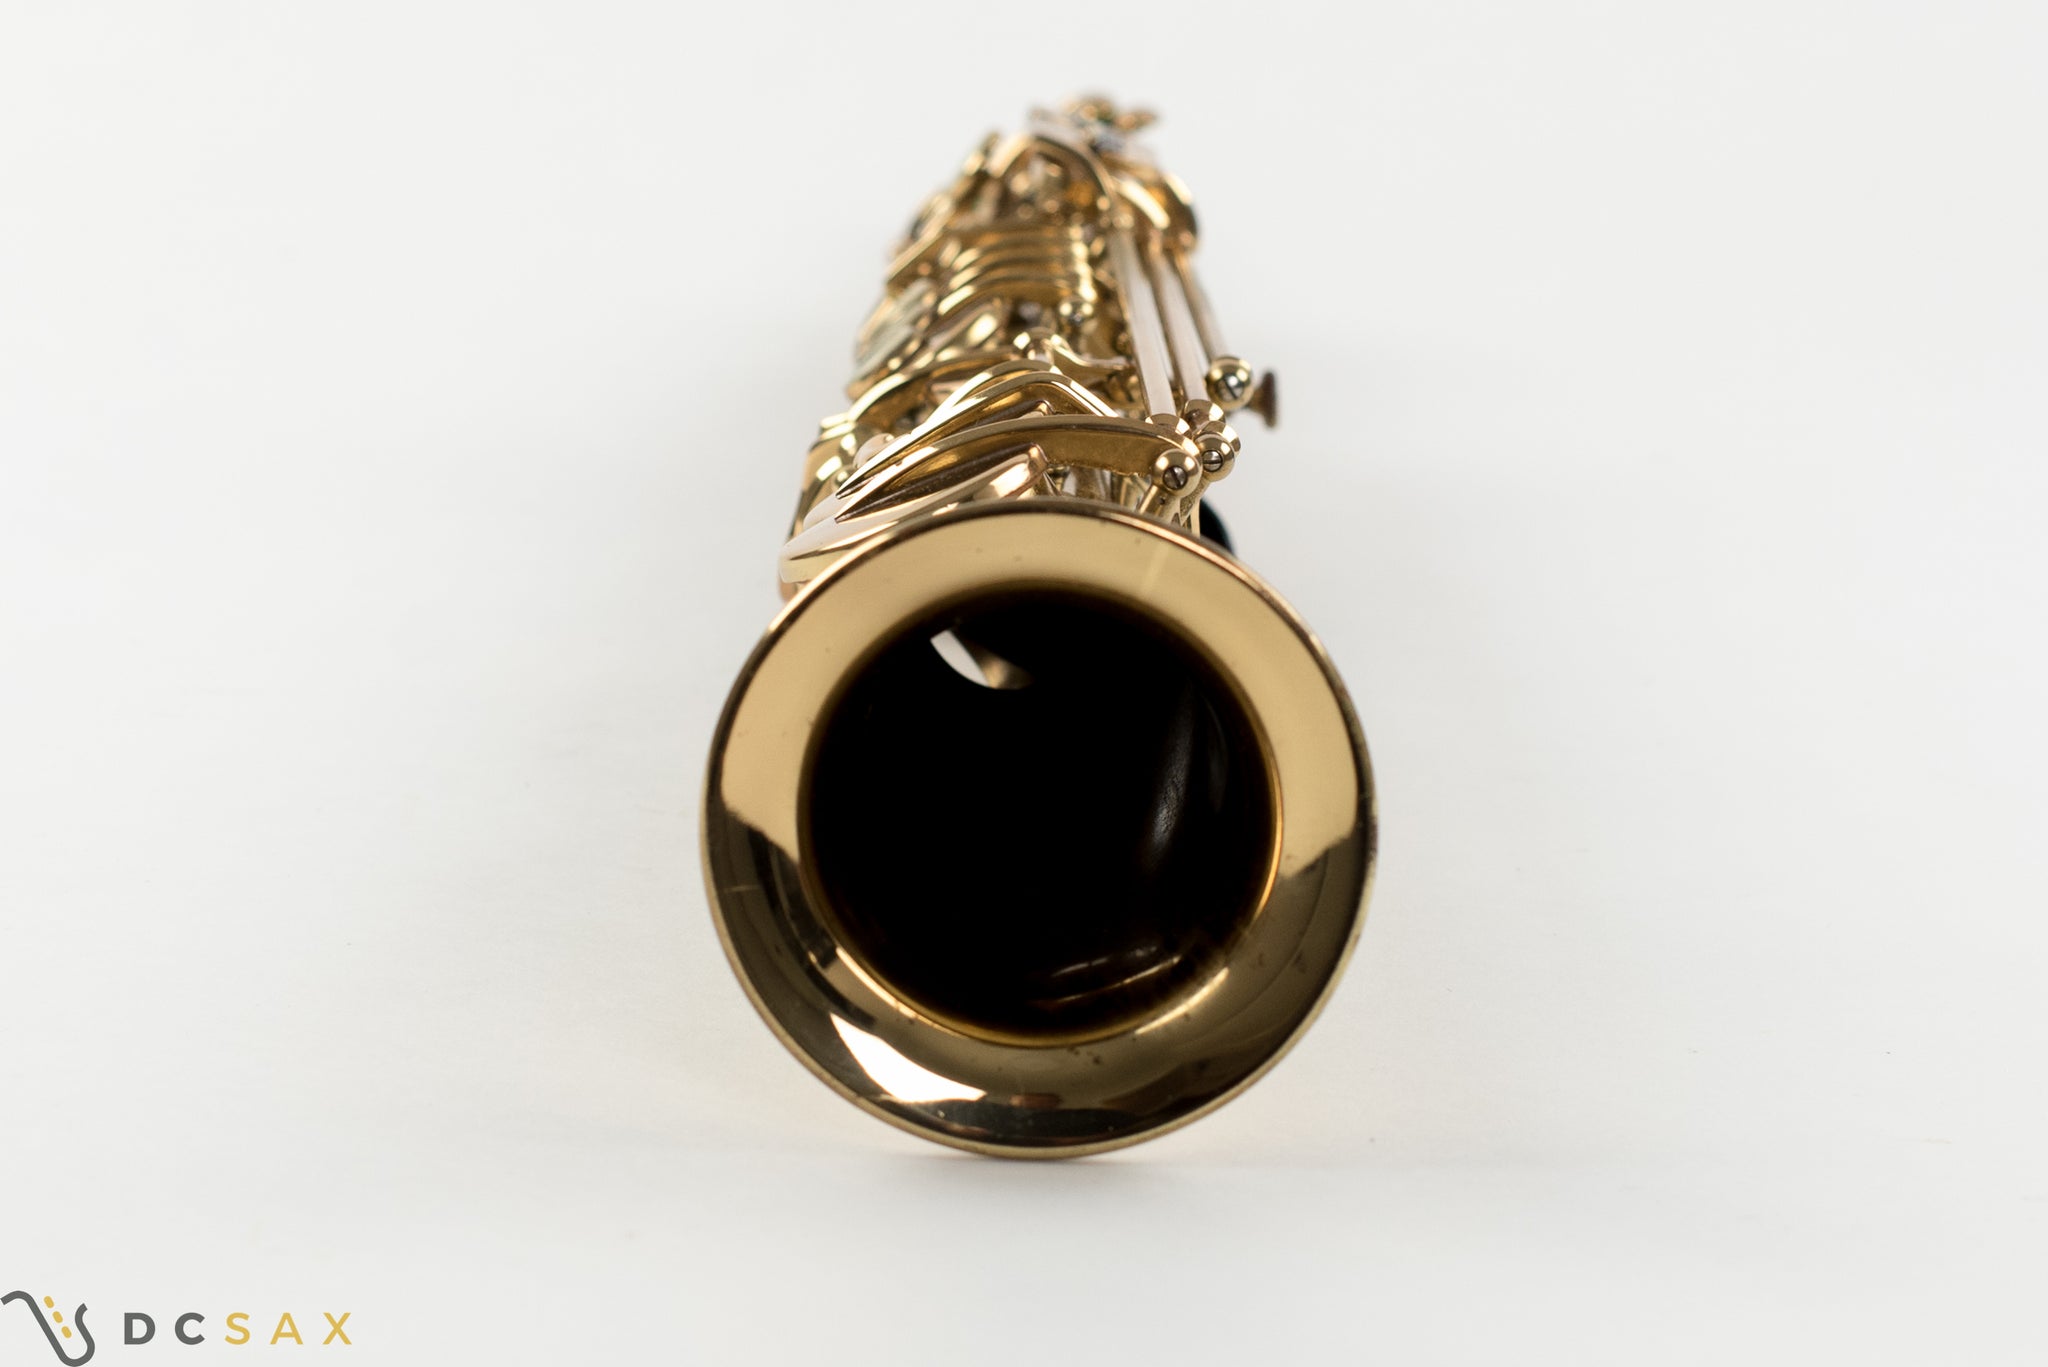 Selmer Mark VI Soprano Saxophone, Near Mint, 99% Original Lacquer, High F#